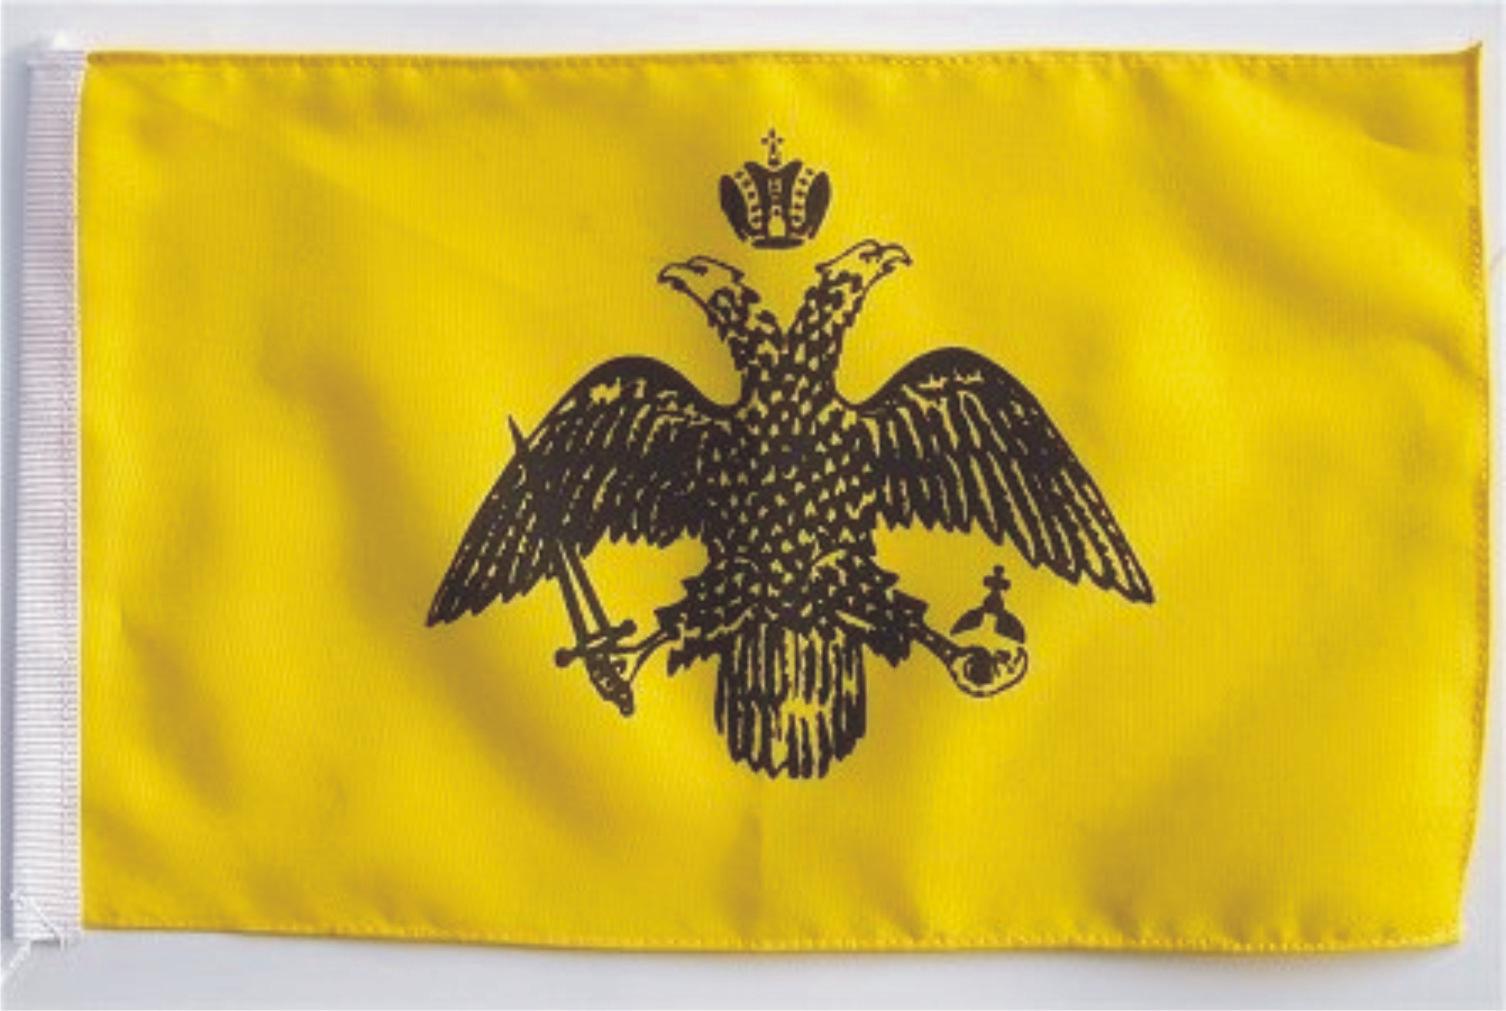 Флаг синий желтый с гербом. Двуглавый Орел Византийской империи. Имперский флаг Византии. Герб священной римской империи двуглавый Орел. Флаг Византии империи.